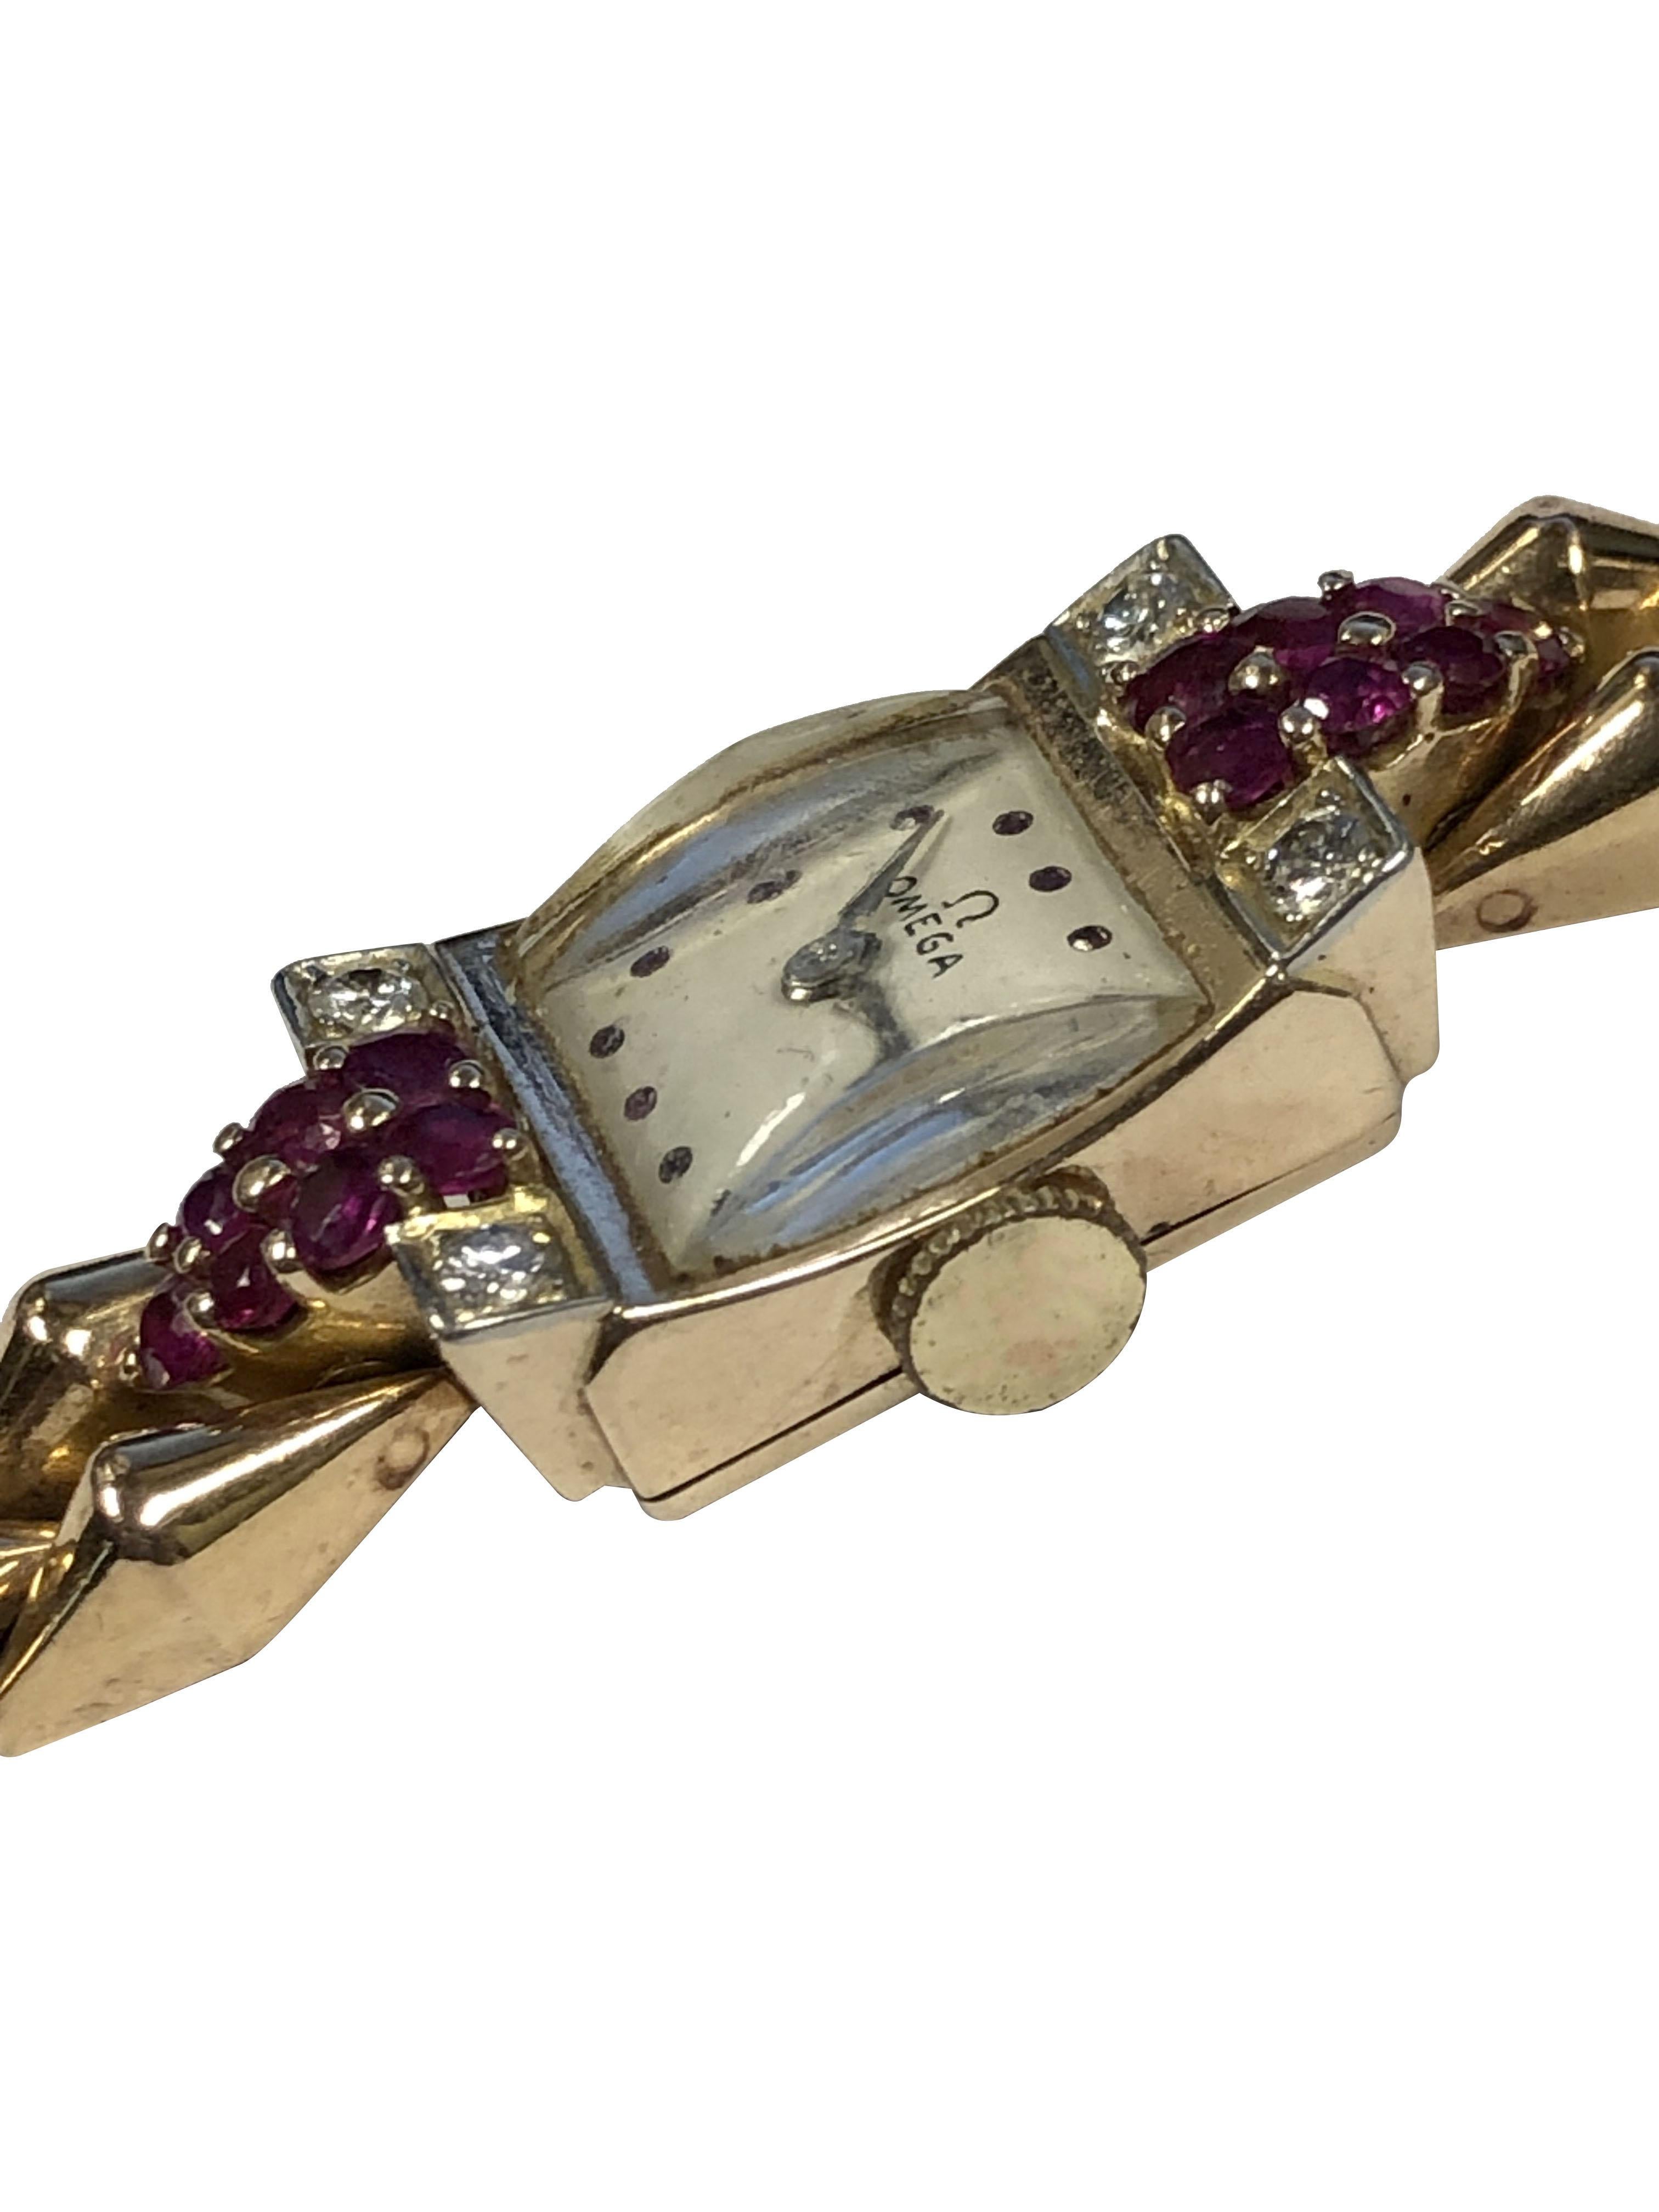 CIRCA 1940er Omega Damen Armbanduhr, 22 x 14 M.M. 14k Rose Gold Signed Omega 2 Stück Fall, der Fall oben ist mit feinen Farbe Rubine und runde Diamanten im Brillantschliff gesetzt. 17 Jewel mechanische, manuelle Wind Bewegung, weißes Zifferblatt mit